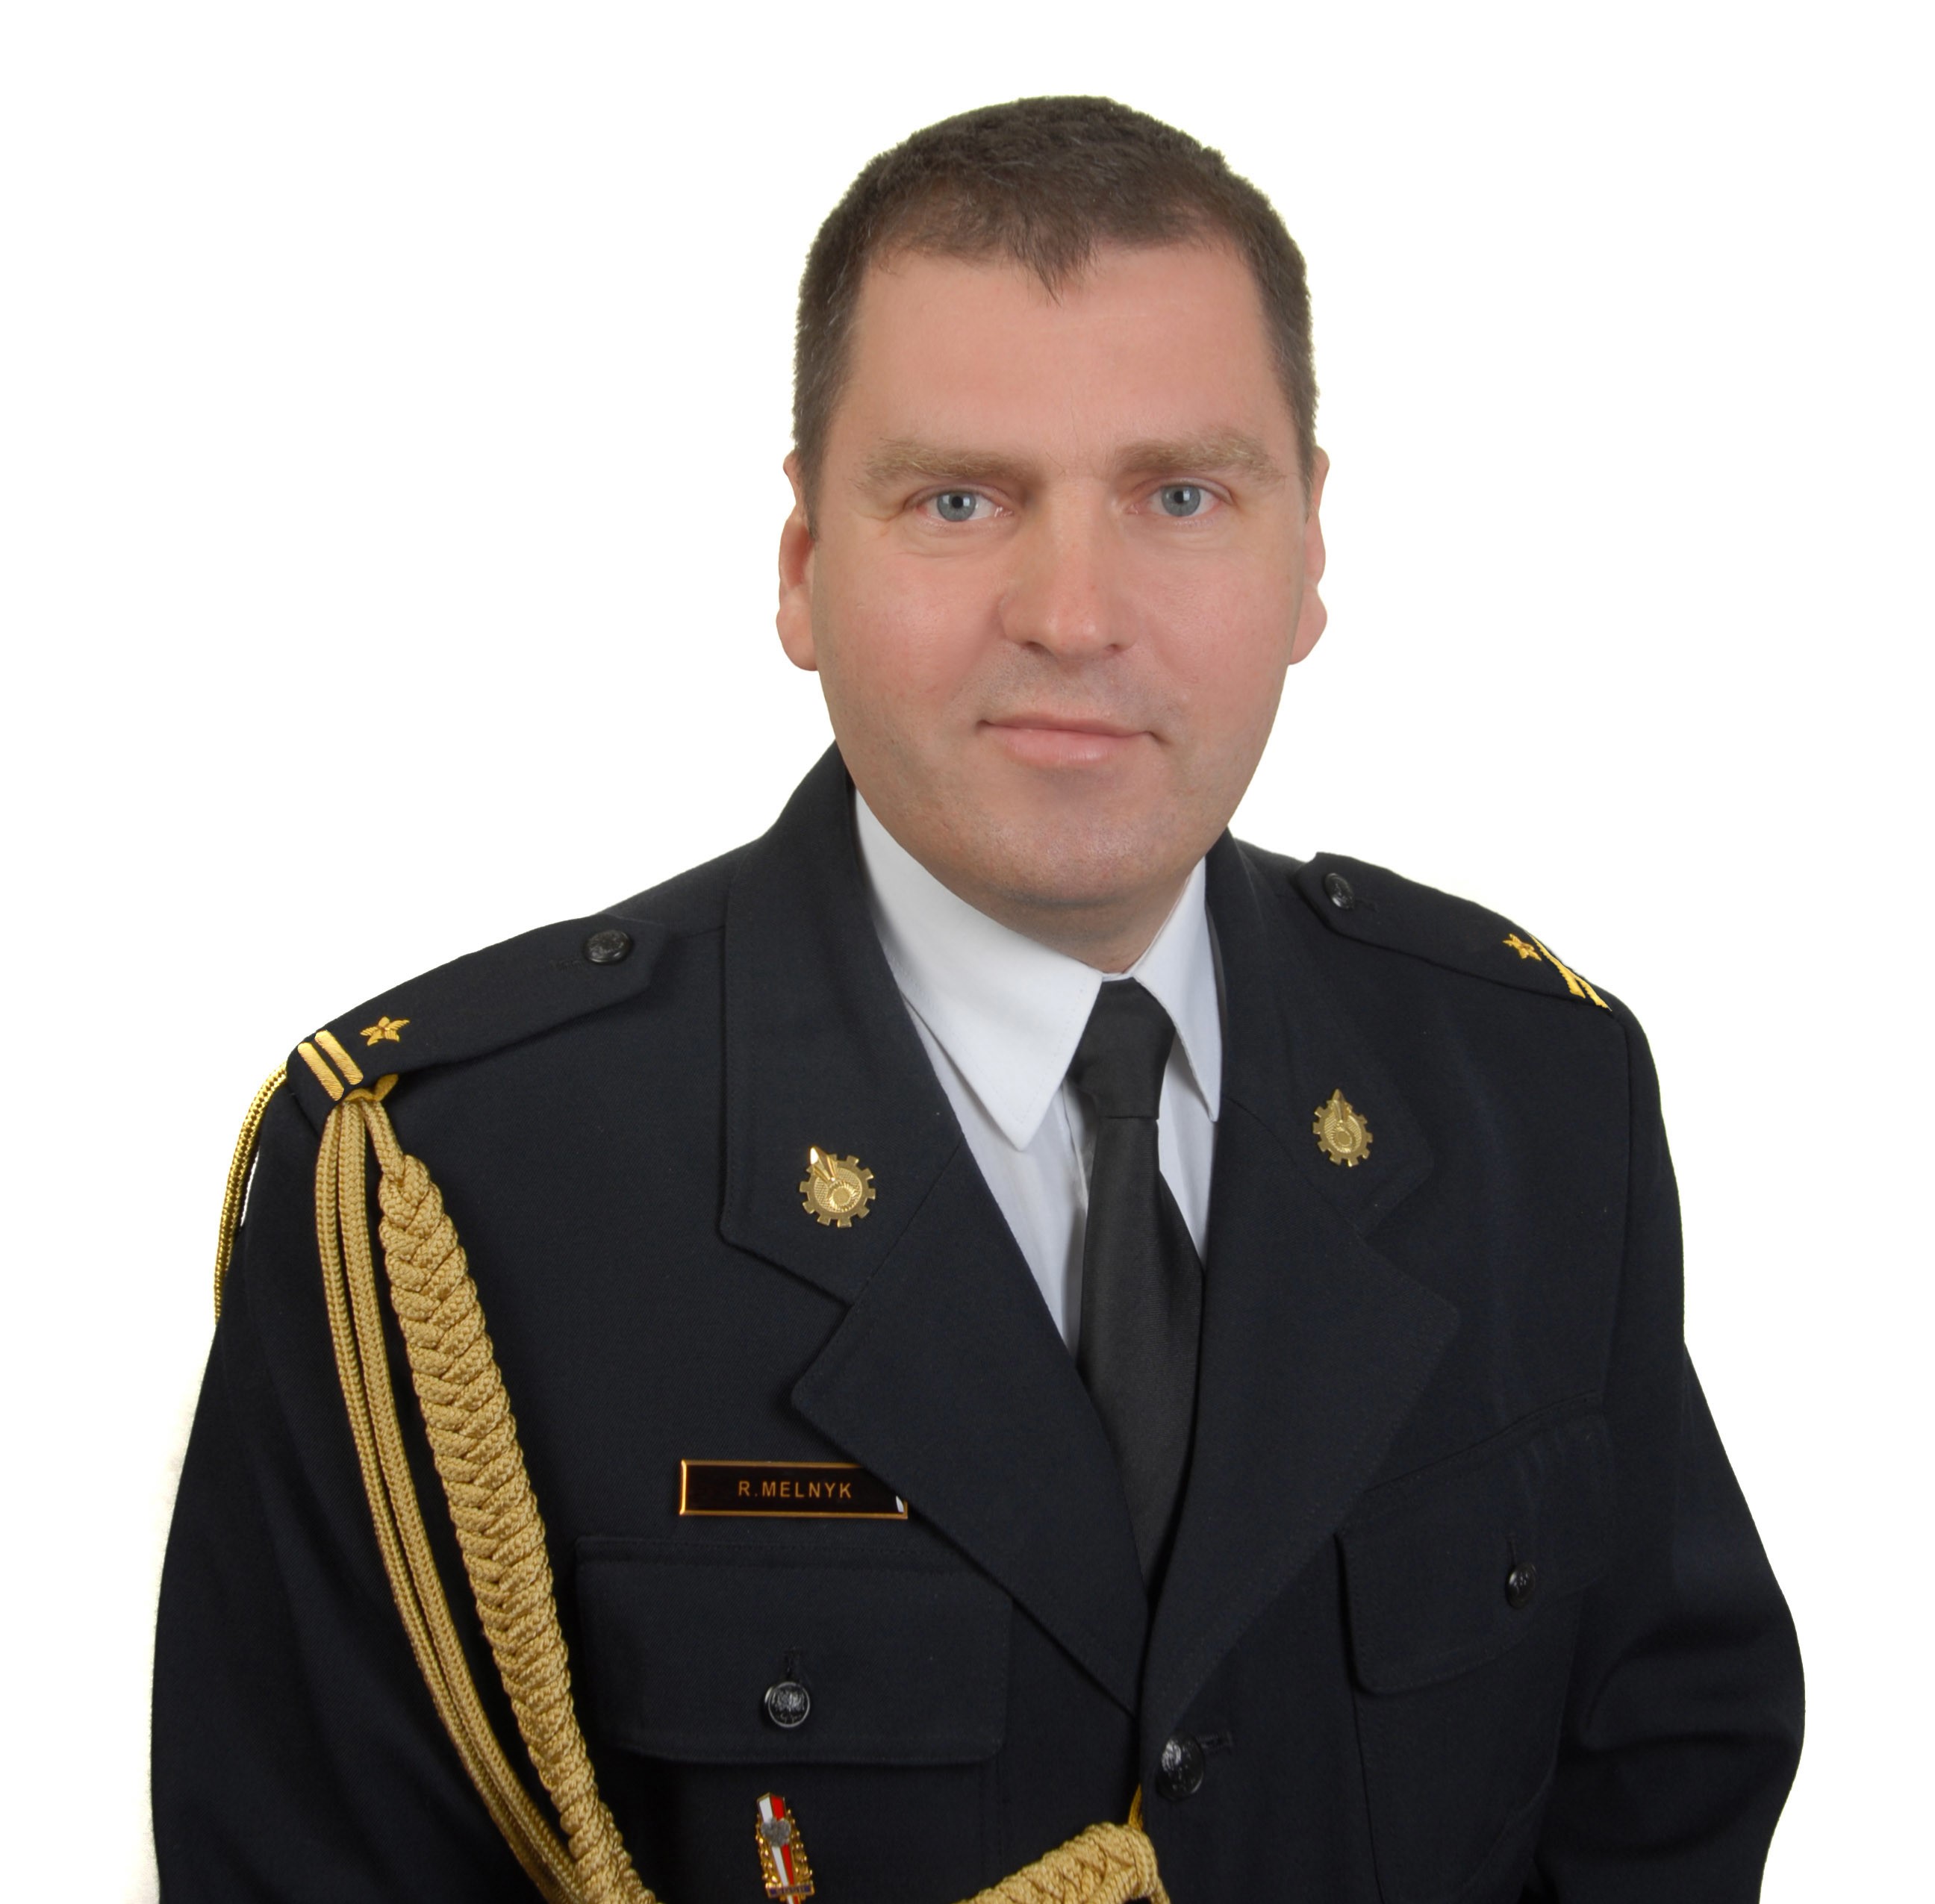 st. kpt. Rafał Melnyk